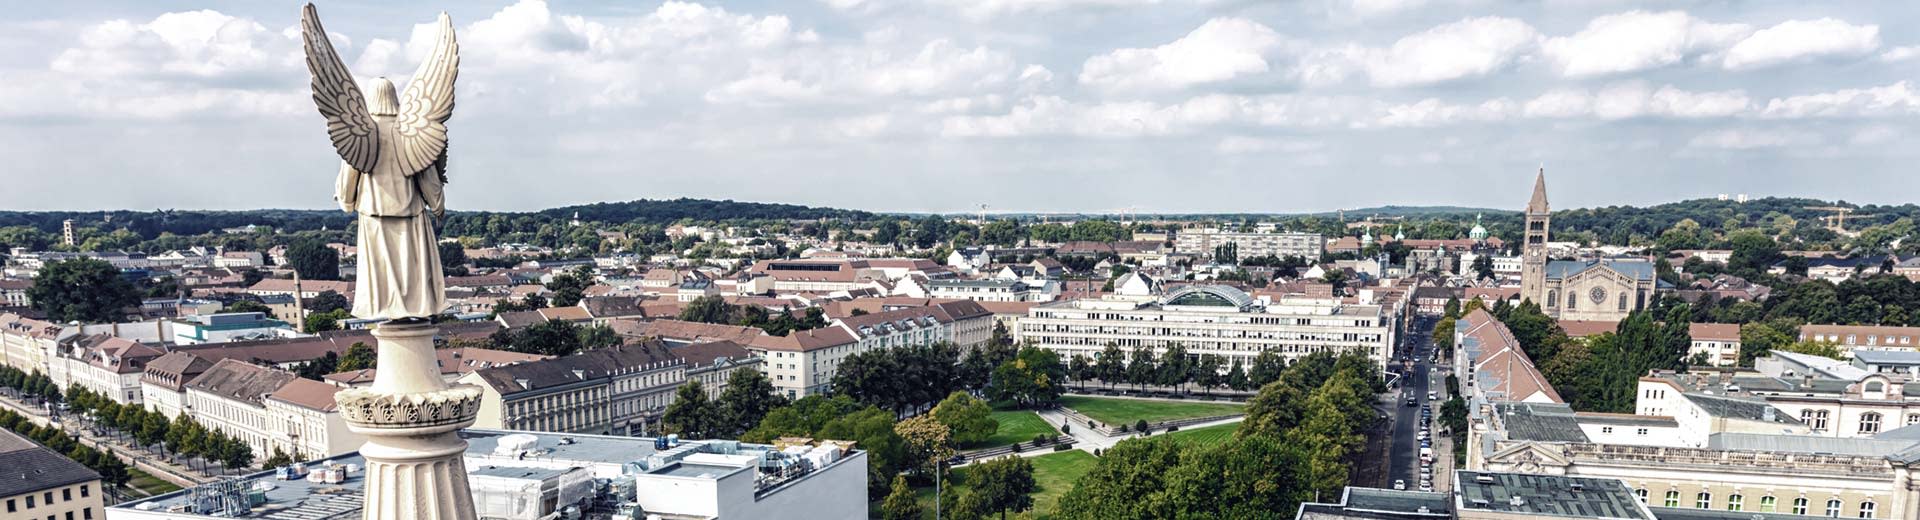 美丽的东德小镇波茨坦，拥有低矮的建筑和大量的绿色公园。